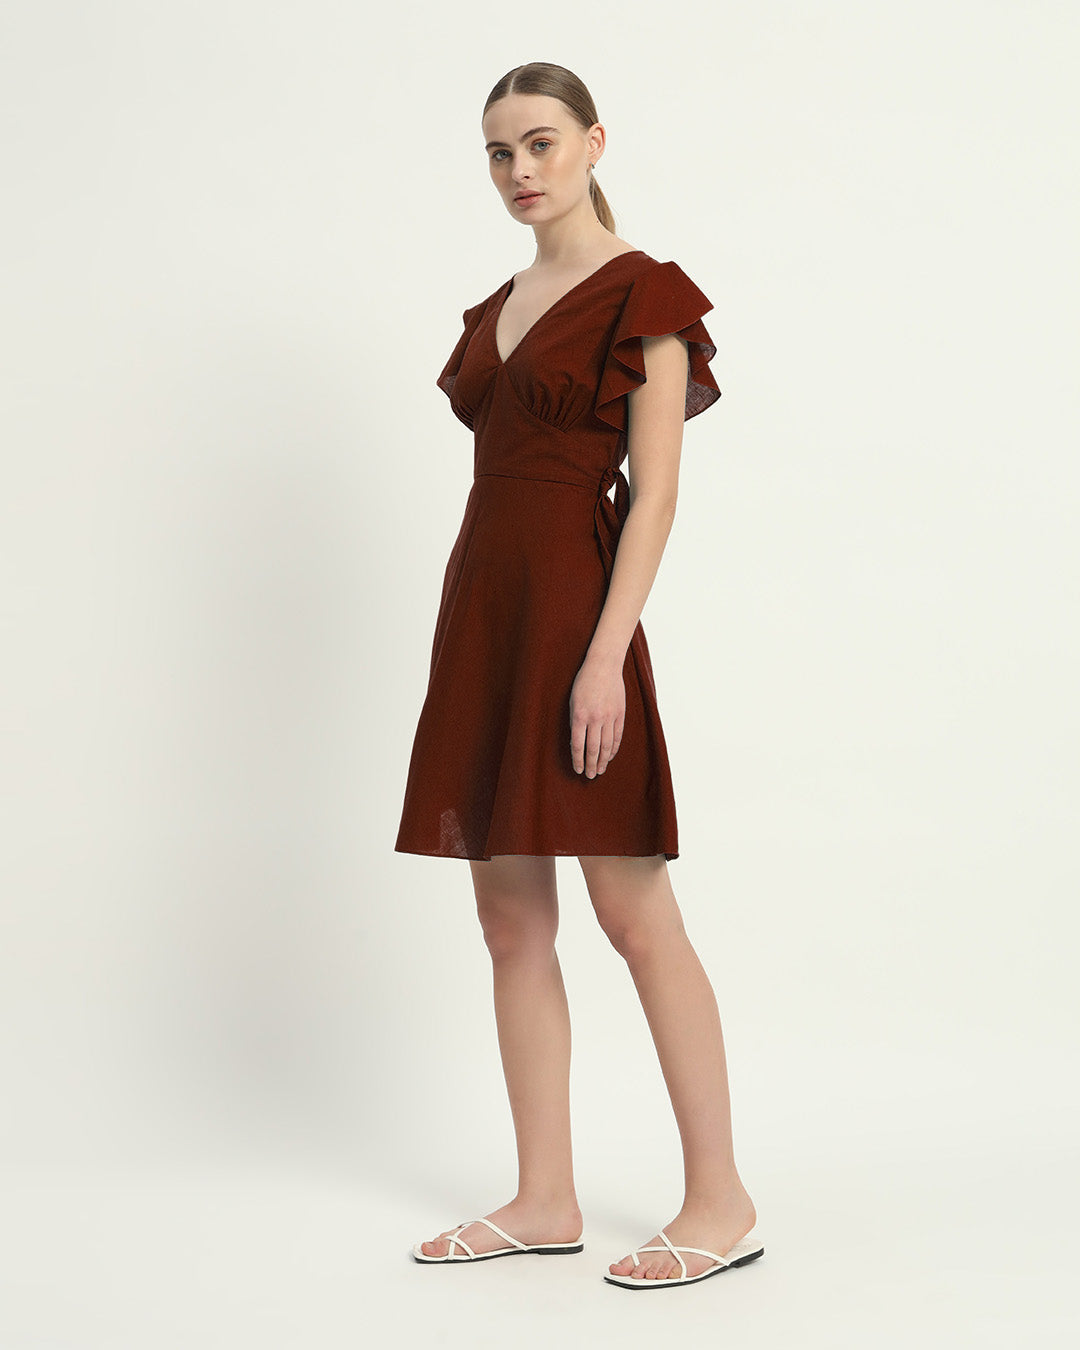 The Rouge Fairlie Cotton Dress